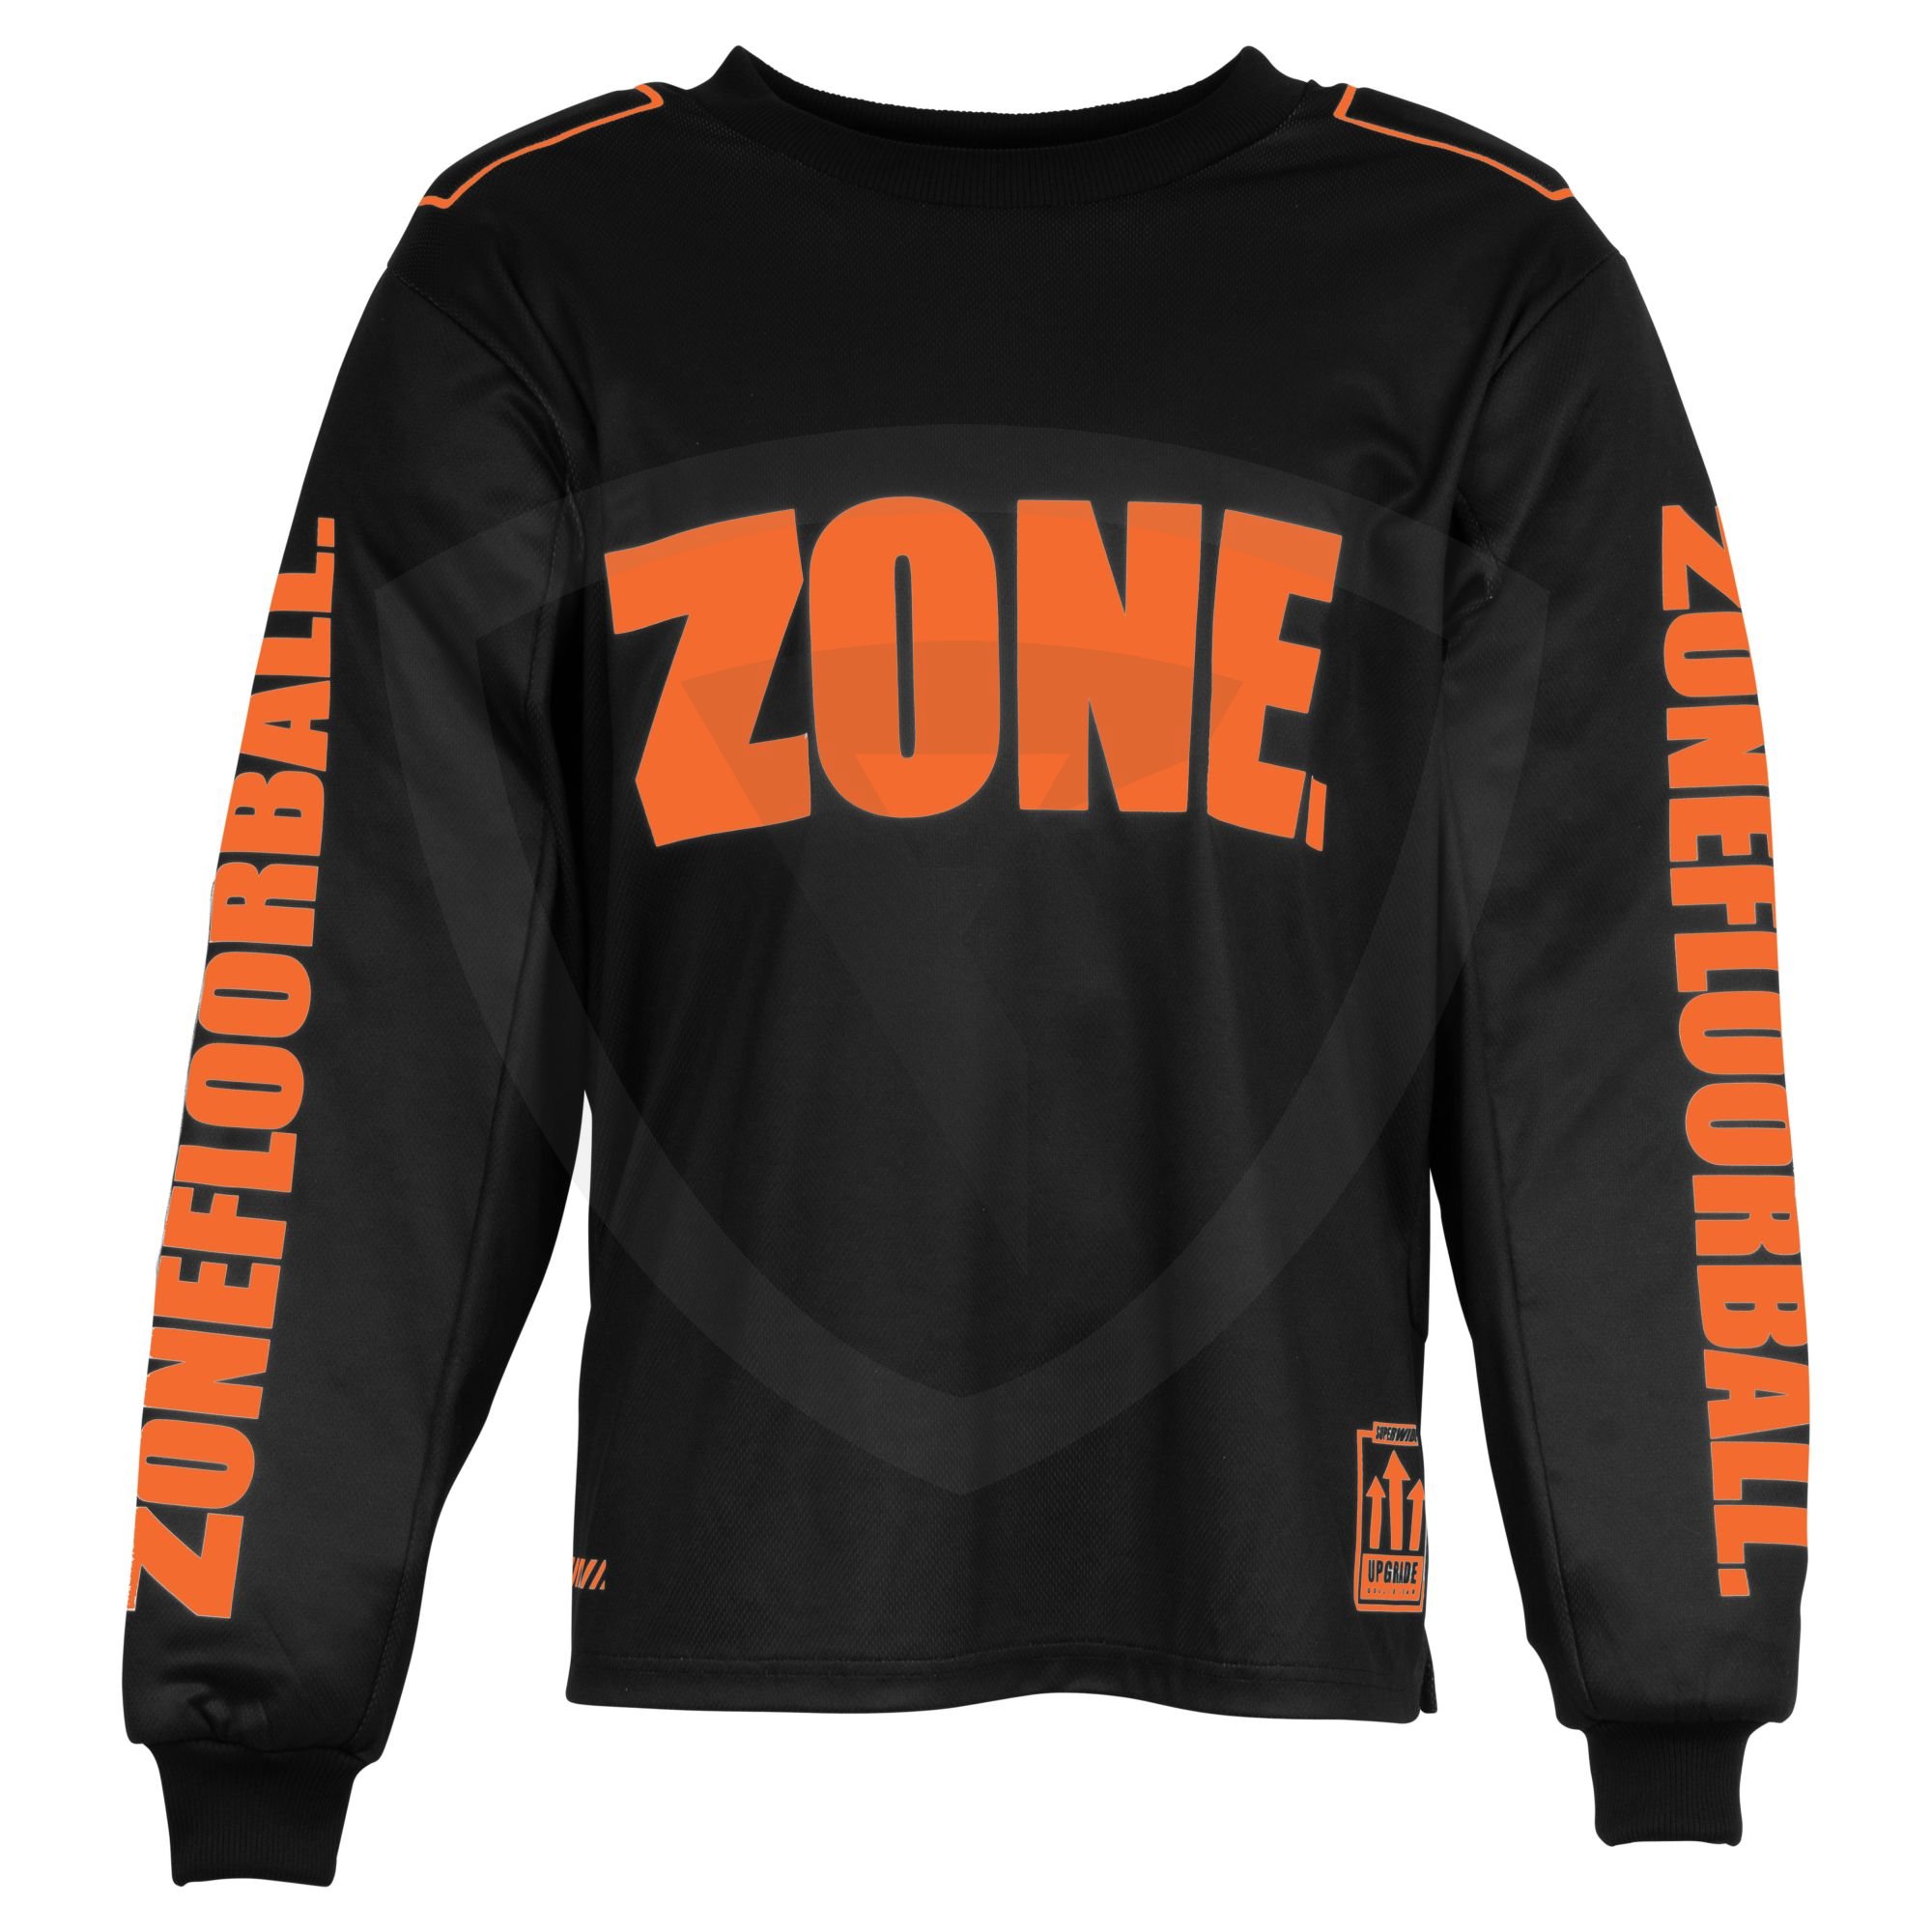 Zone UPGRADE SW Goalie Sweater SR. Black-Lava Orange L černá-oranžová